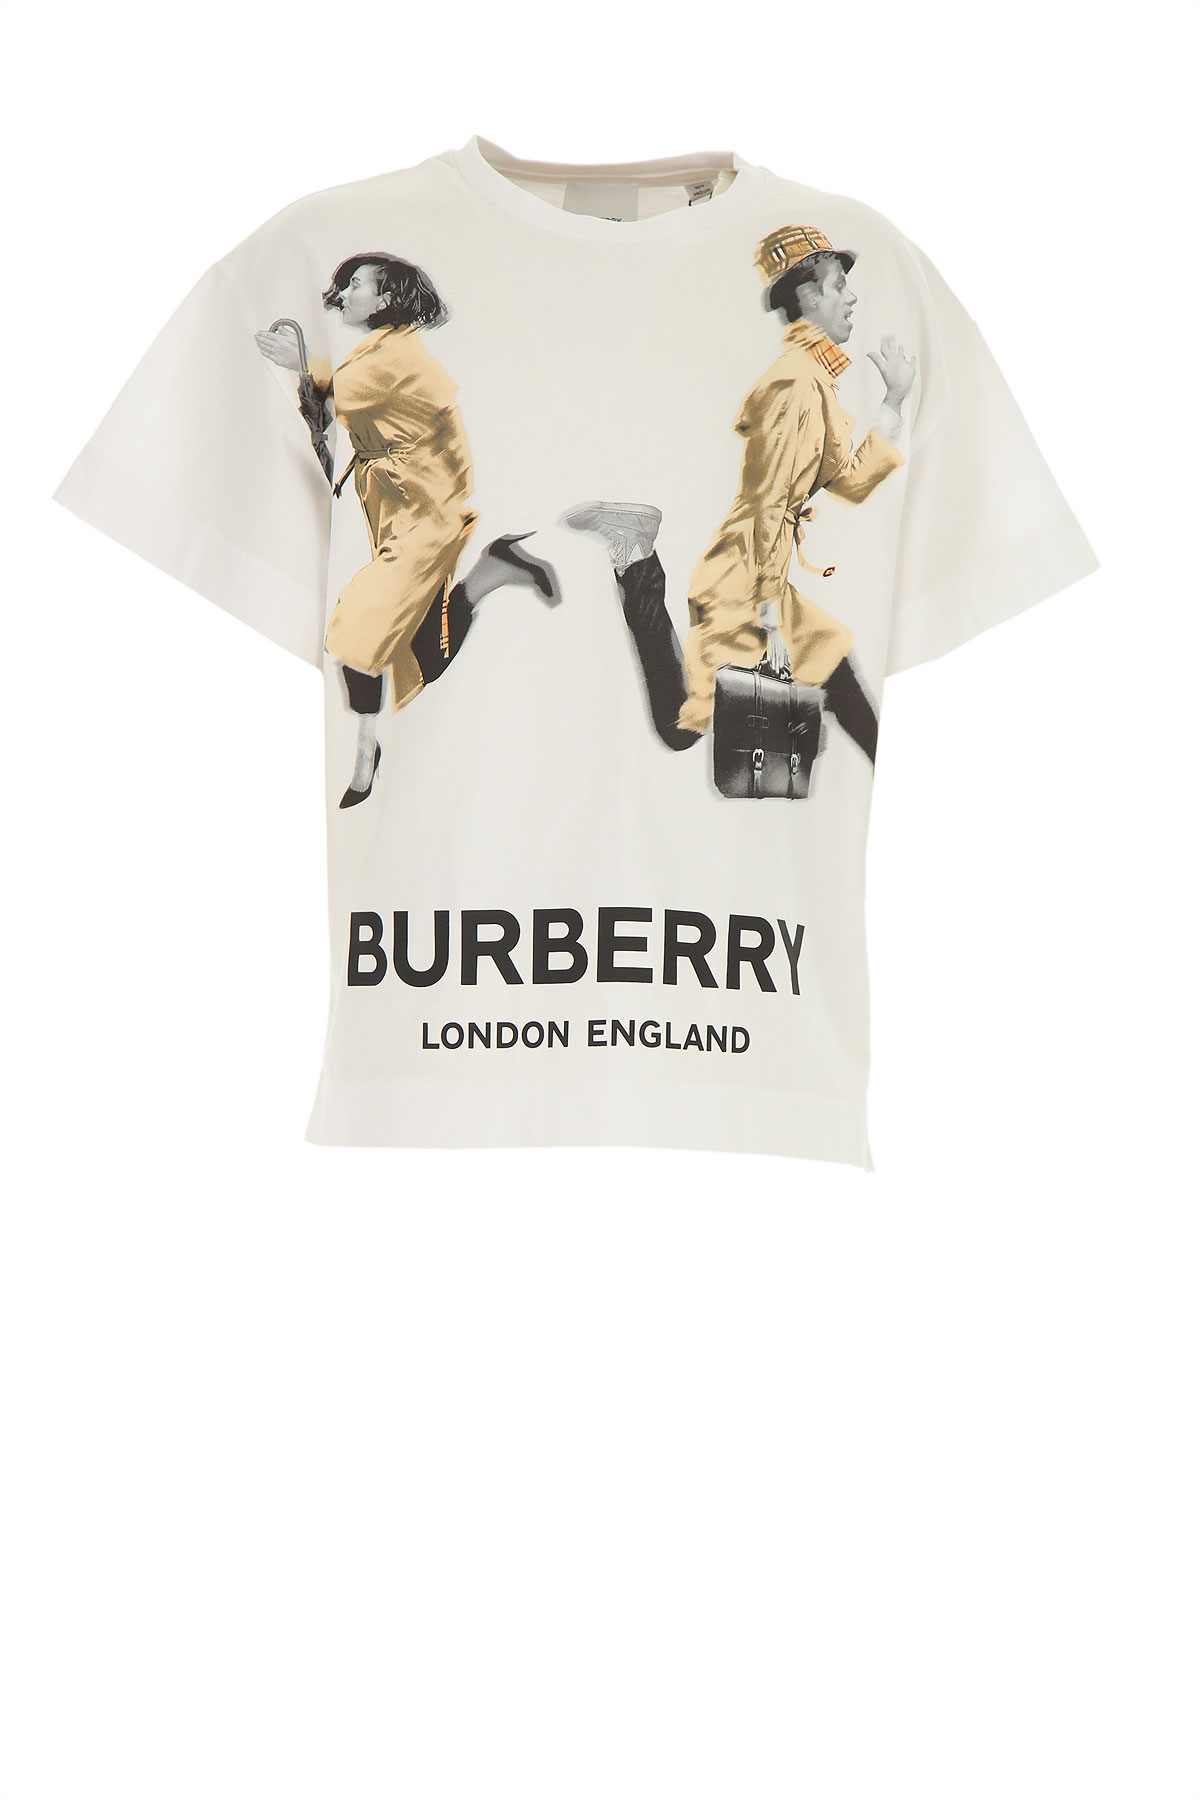 Burberry Kinder T-Shirt für Jungen Günstig im Sale, Weiss, Baumwolle, 2017, 3Y 8Y